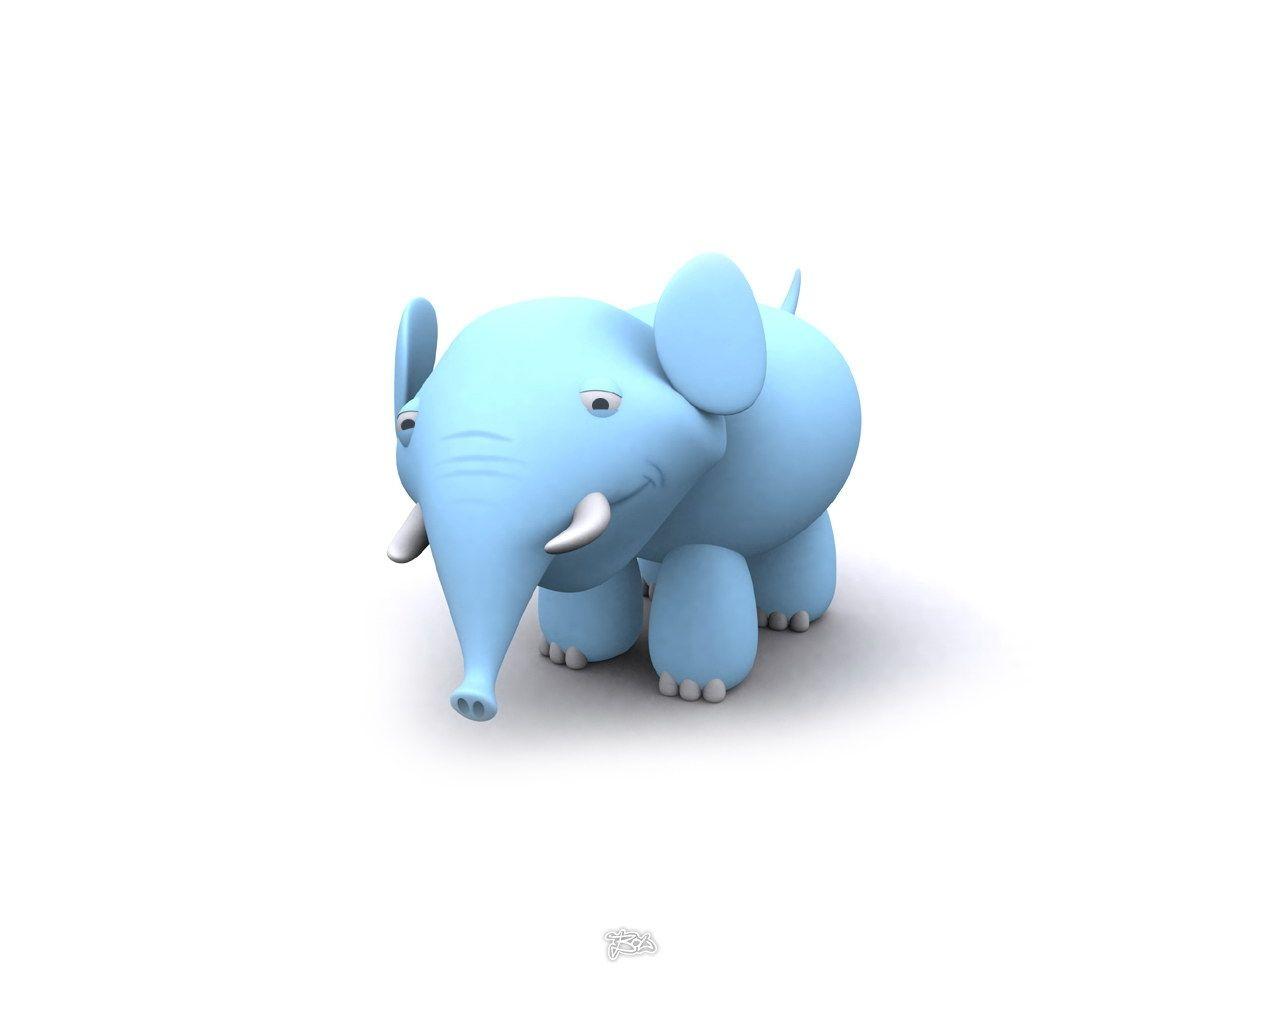 projeto minúsculo — elephants.